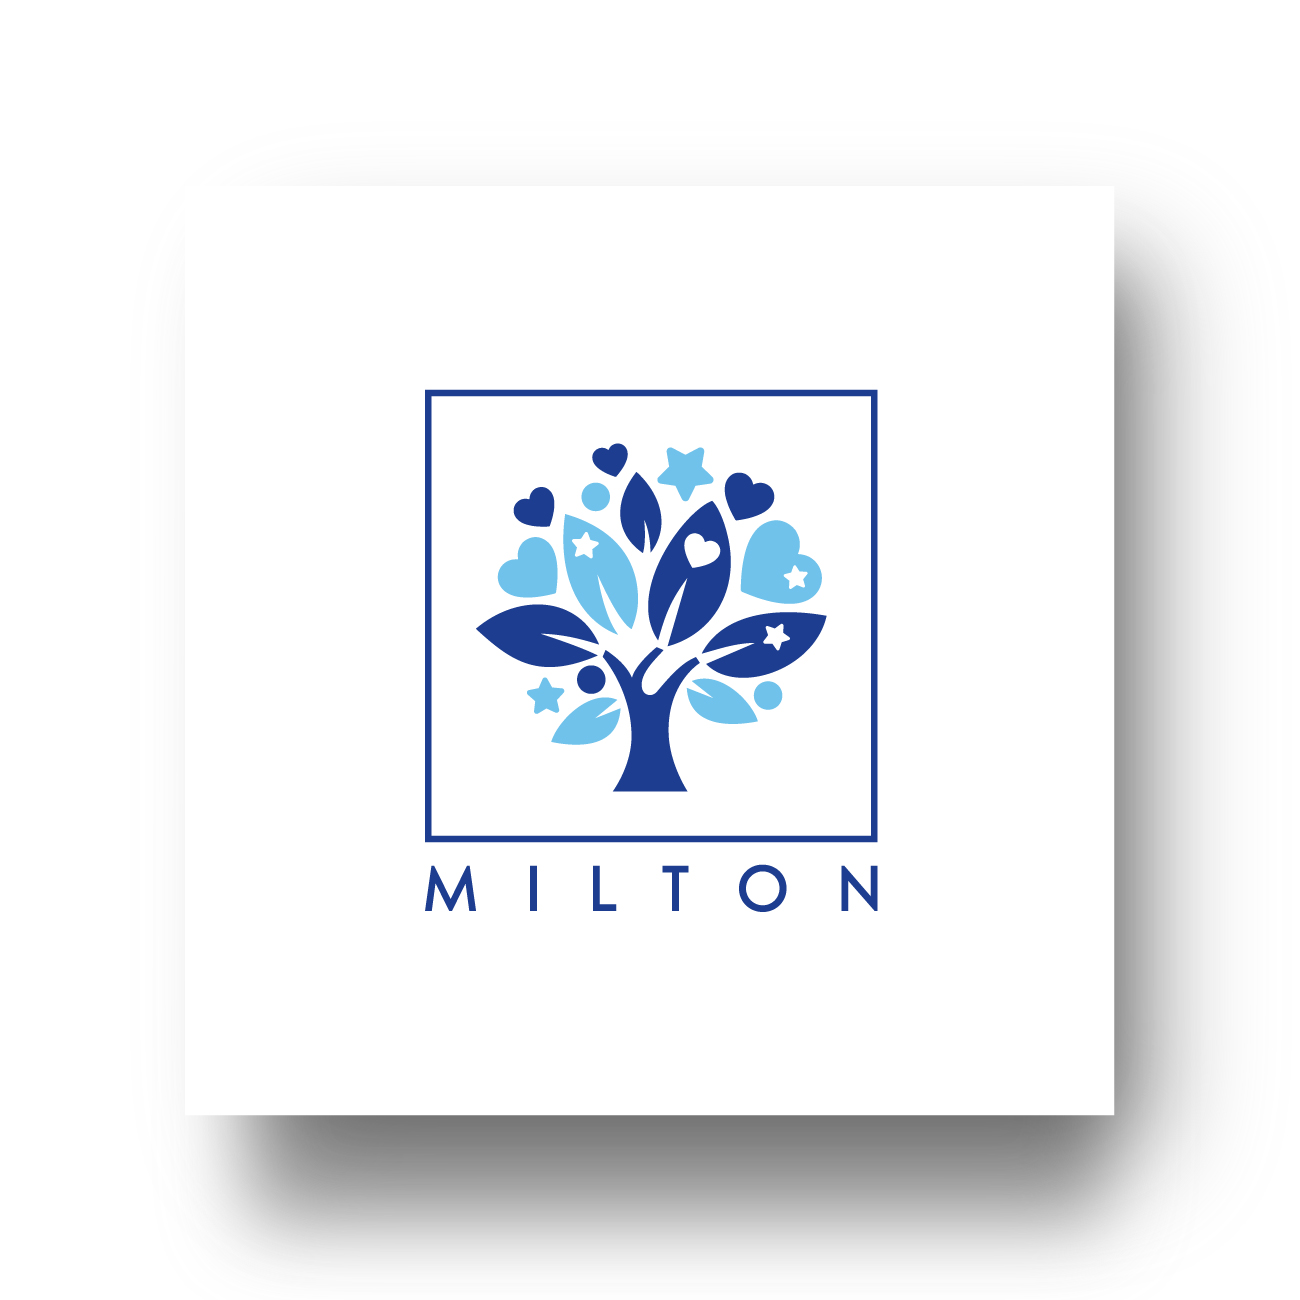 Milton School logo